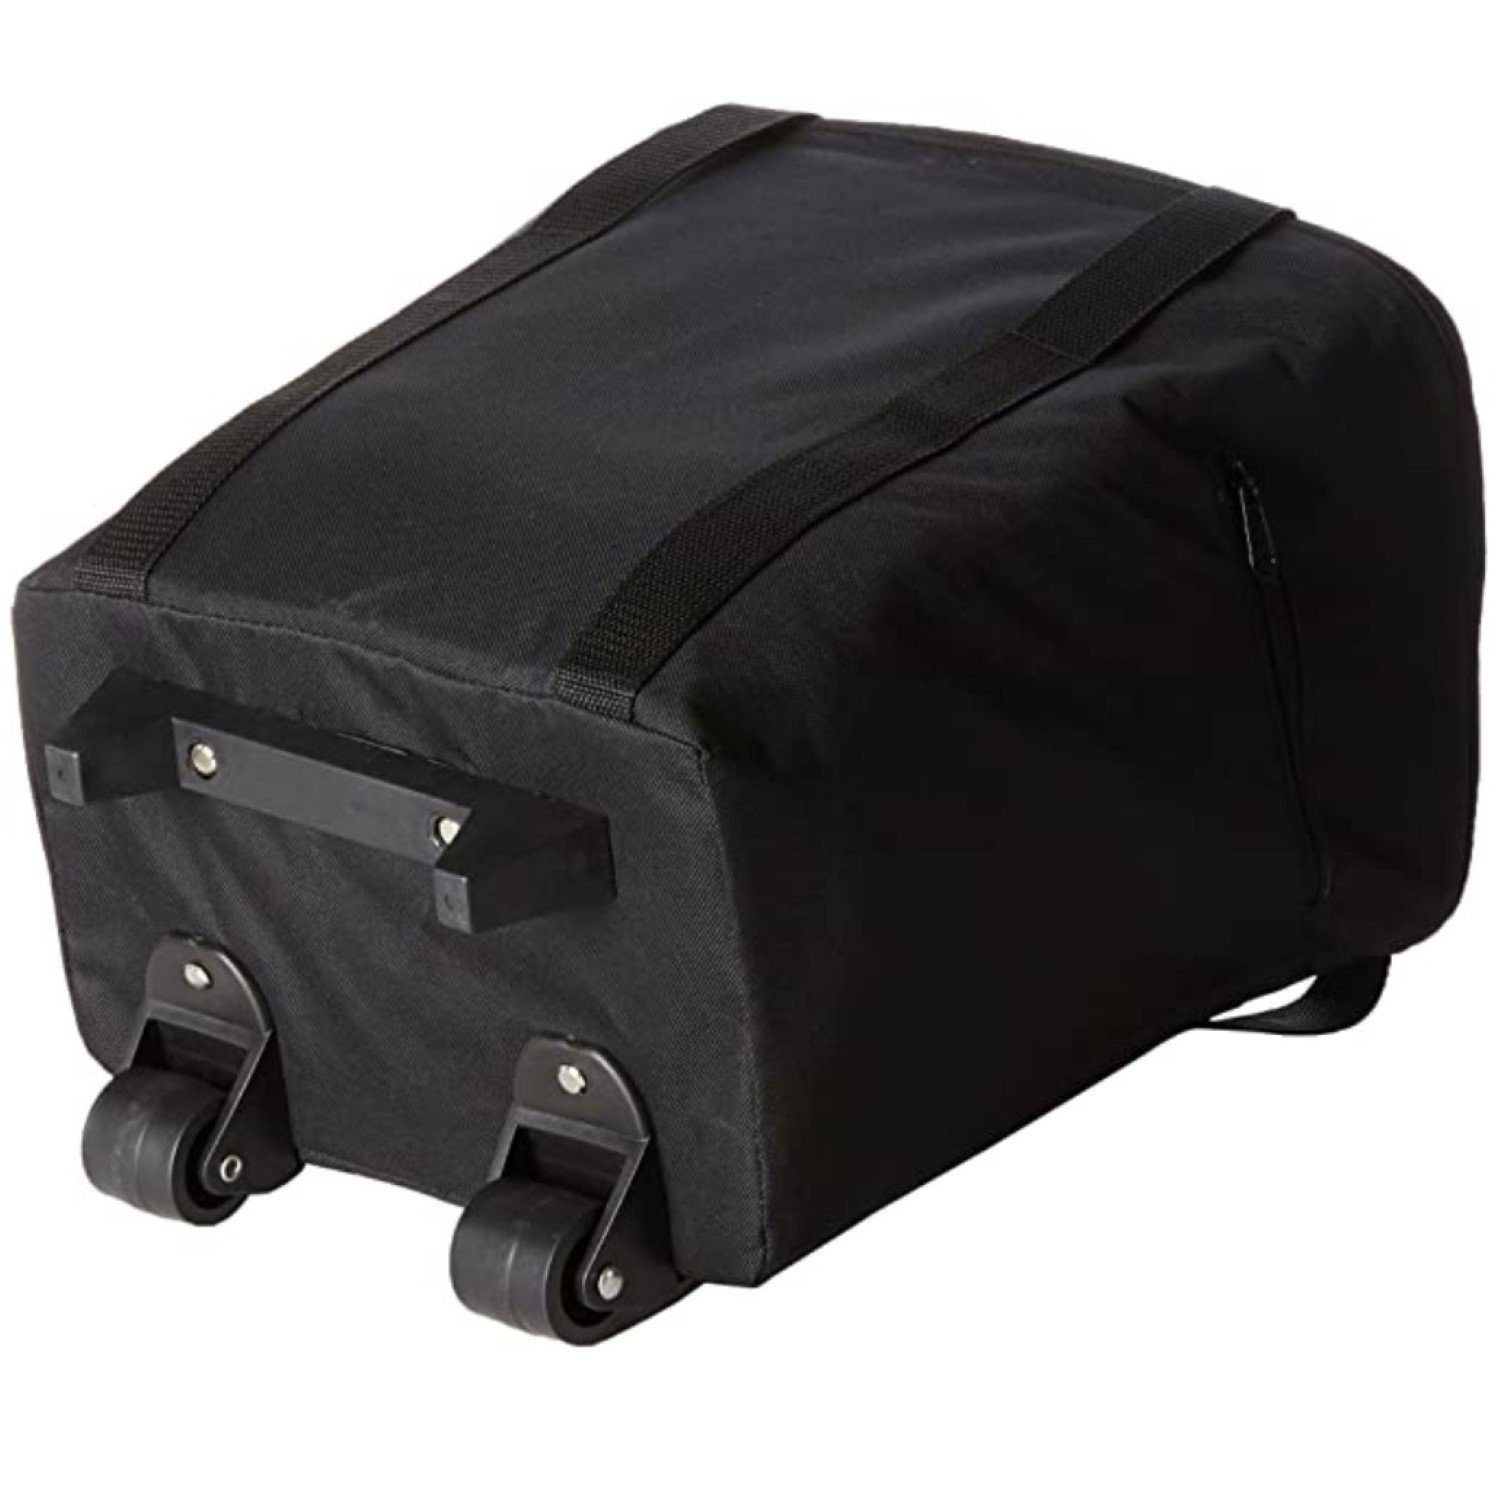 fischer Gepäckträgertasche 2in1 Gepäckträger-Tasche + Trolley 17L,  Fahrrad-Korb Einkauf, Bike Case wasserabweisend, Fahrrad-Tasche mit Volumen  17L, ausziehbarer Griff, einfache Befestigung am Gepäckträger mit Haken